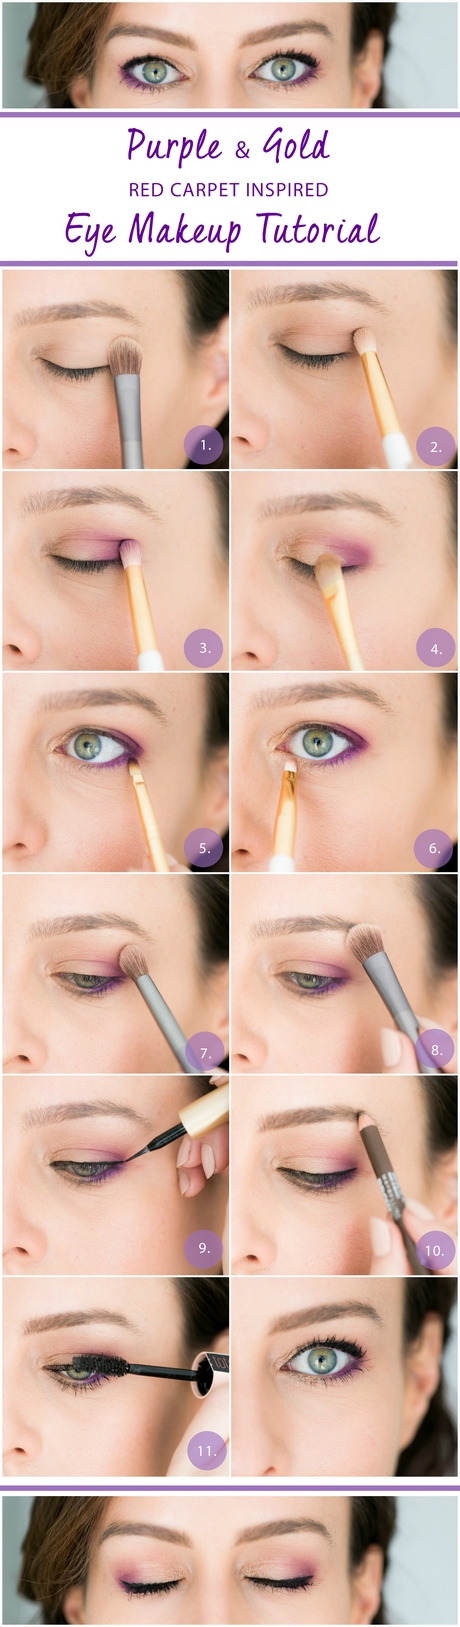 golden-glow-makeup-tutorial-45_2 Golden glow make-up tutorial